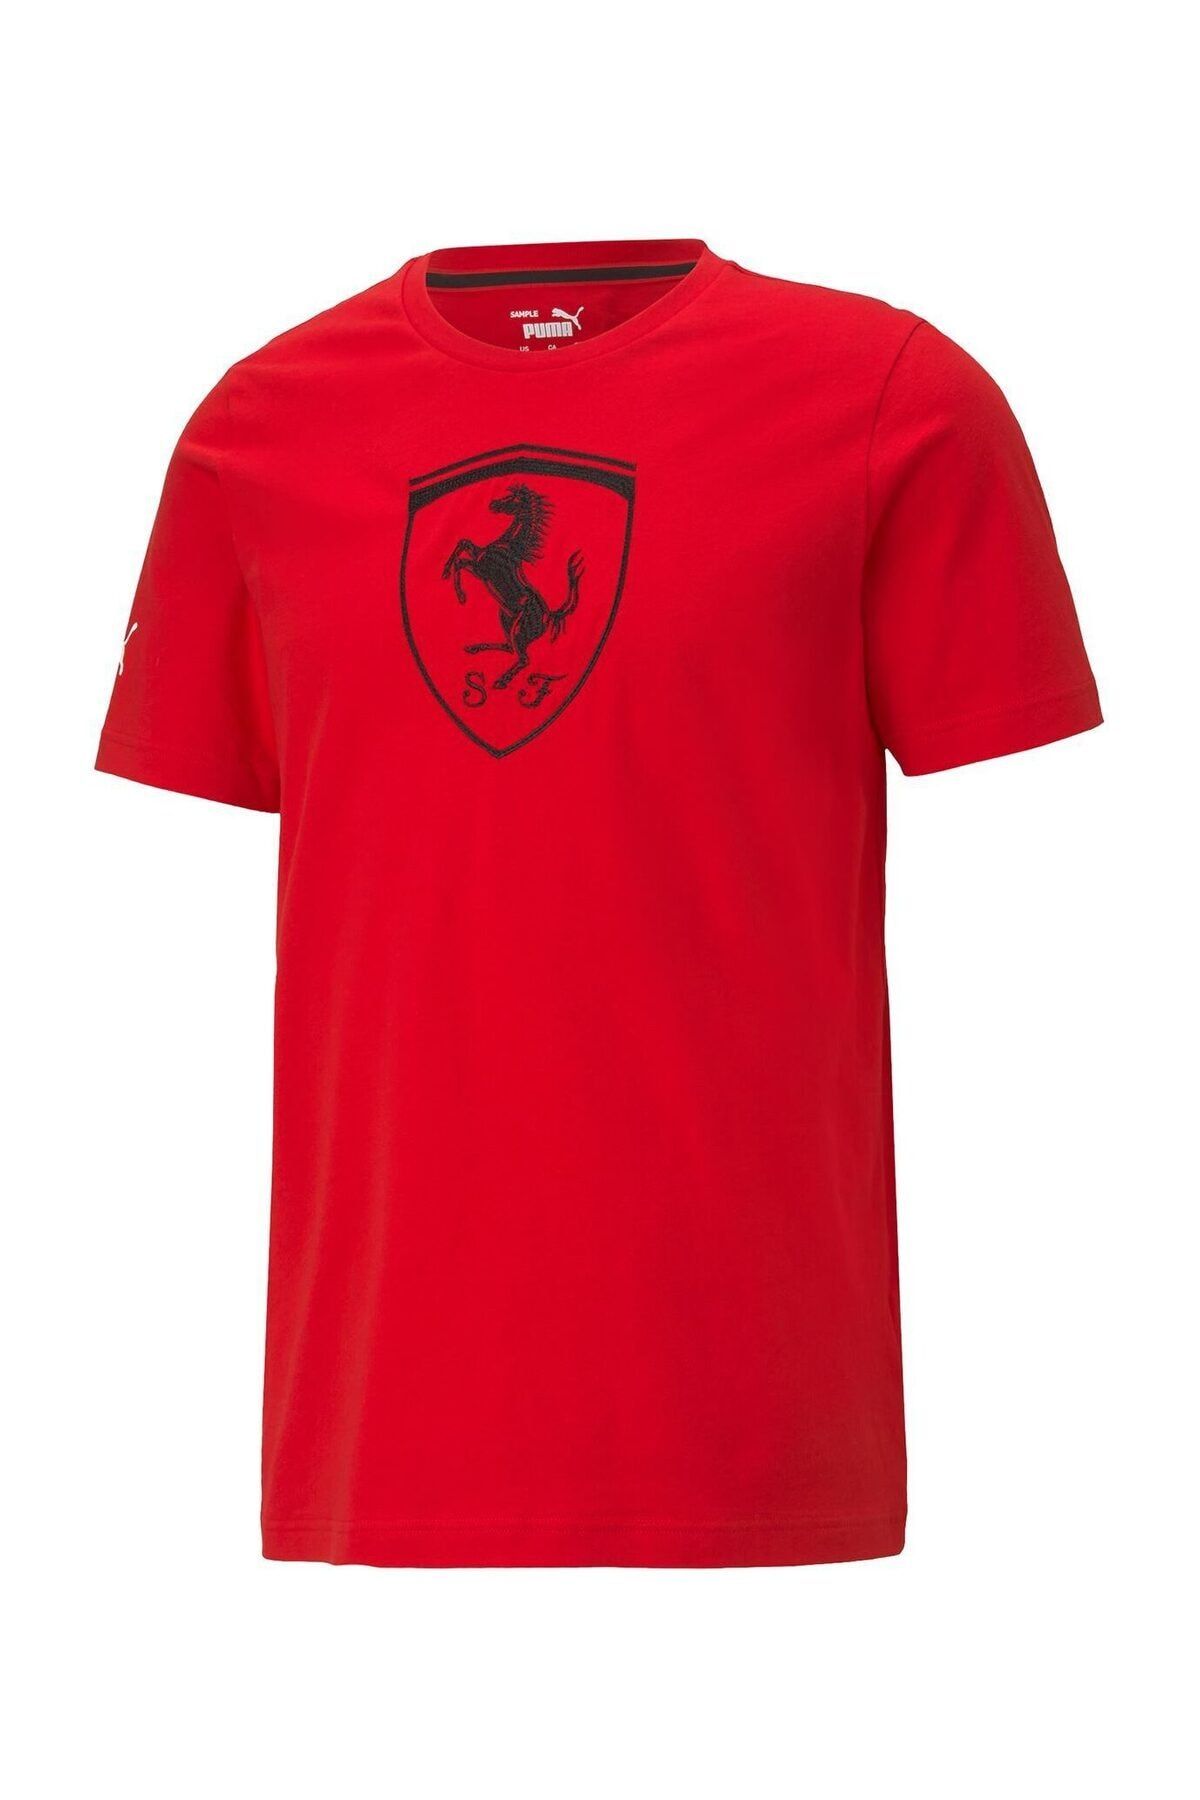 Puma FERRARI RACE BIG SHIELD T Kırmızı Erkek T-Shirt 101085594